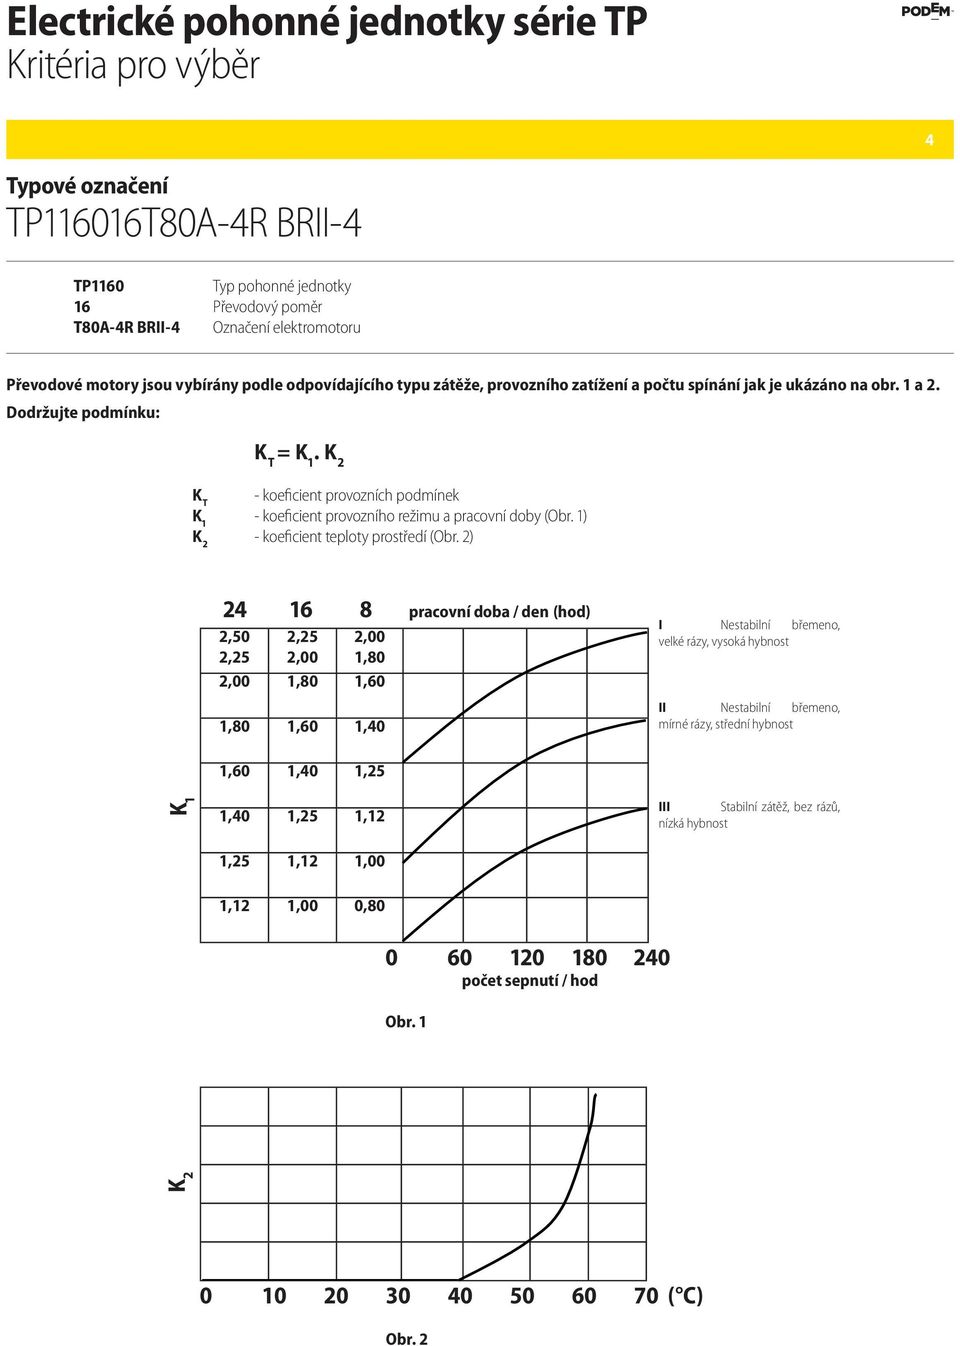 K 2 K T - koeficient provozních podmínek K 1 - koeficient provozního režimu a pracovní doby (Obr. 1) K 2 - koeficient teploty prostředí (Obr.